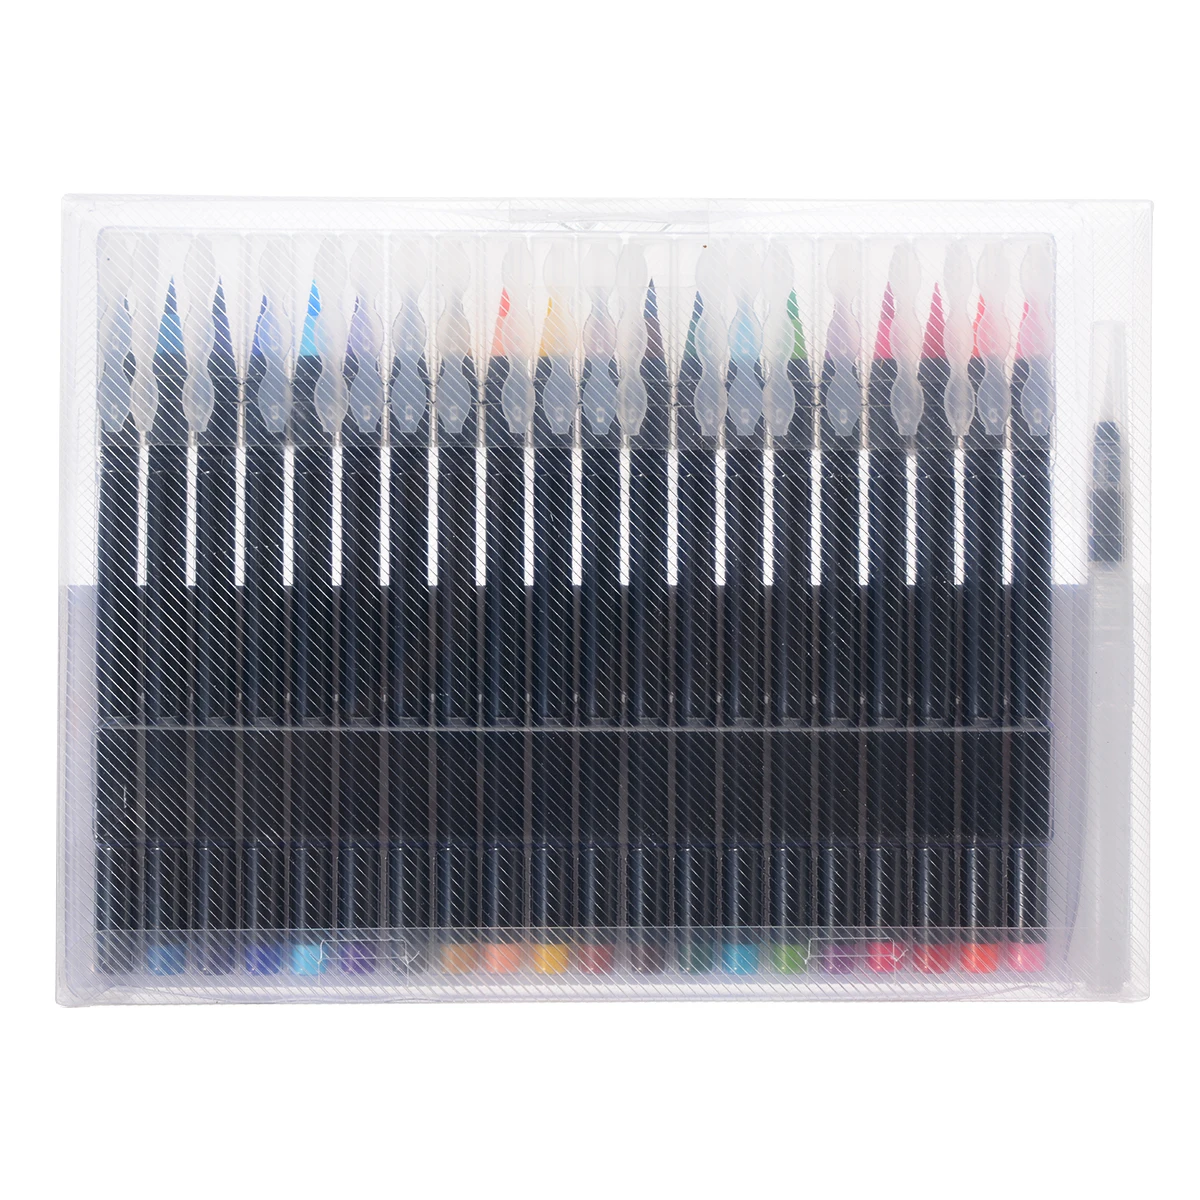 20 цветов Ручка для рисования акварелью кисти ручки кисти художника эскиз рисования маркеры ручки набор для производства карт